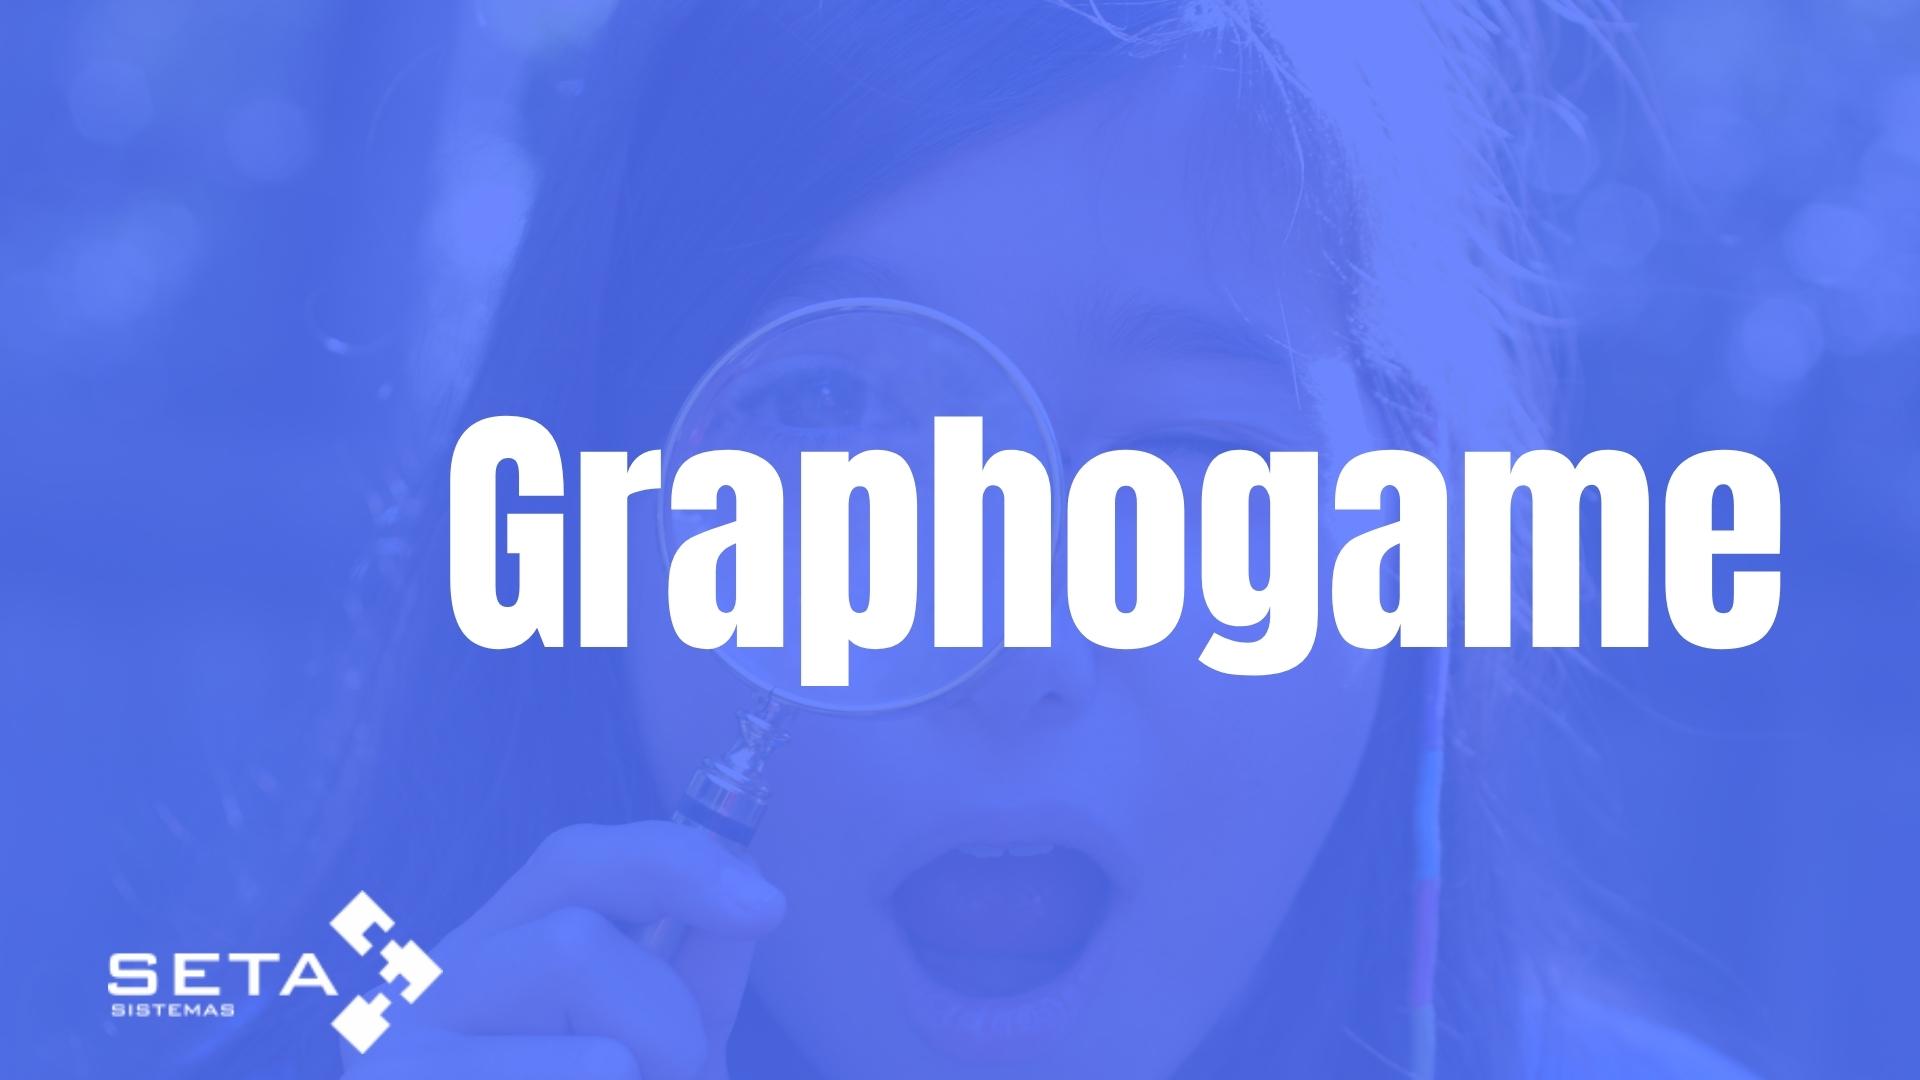 GraphoGame: MEC lança jogo para ensinar a ler em português